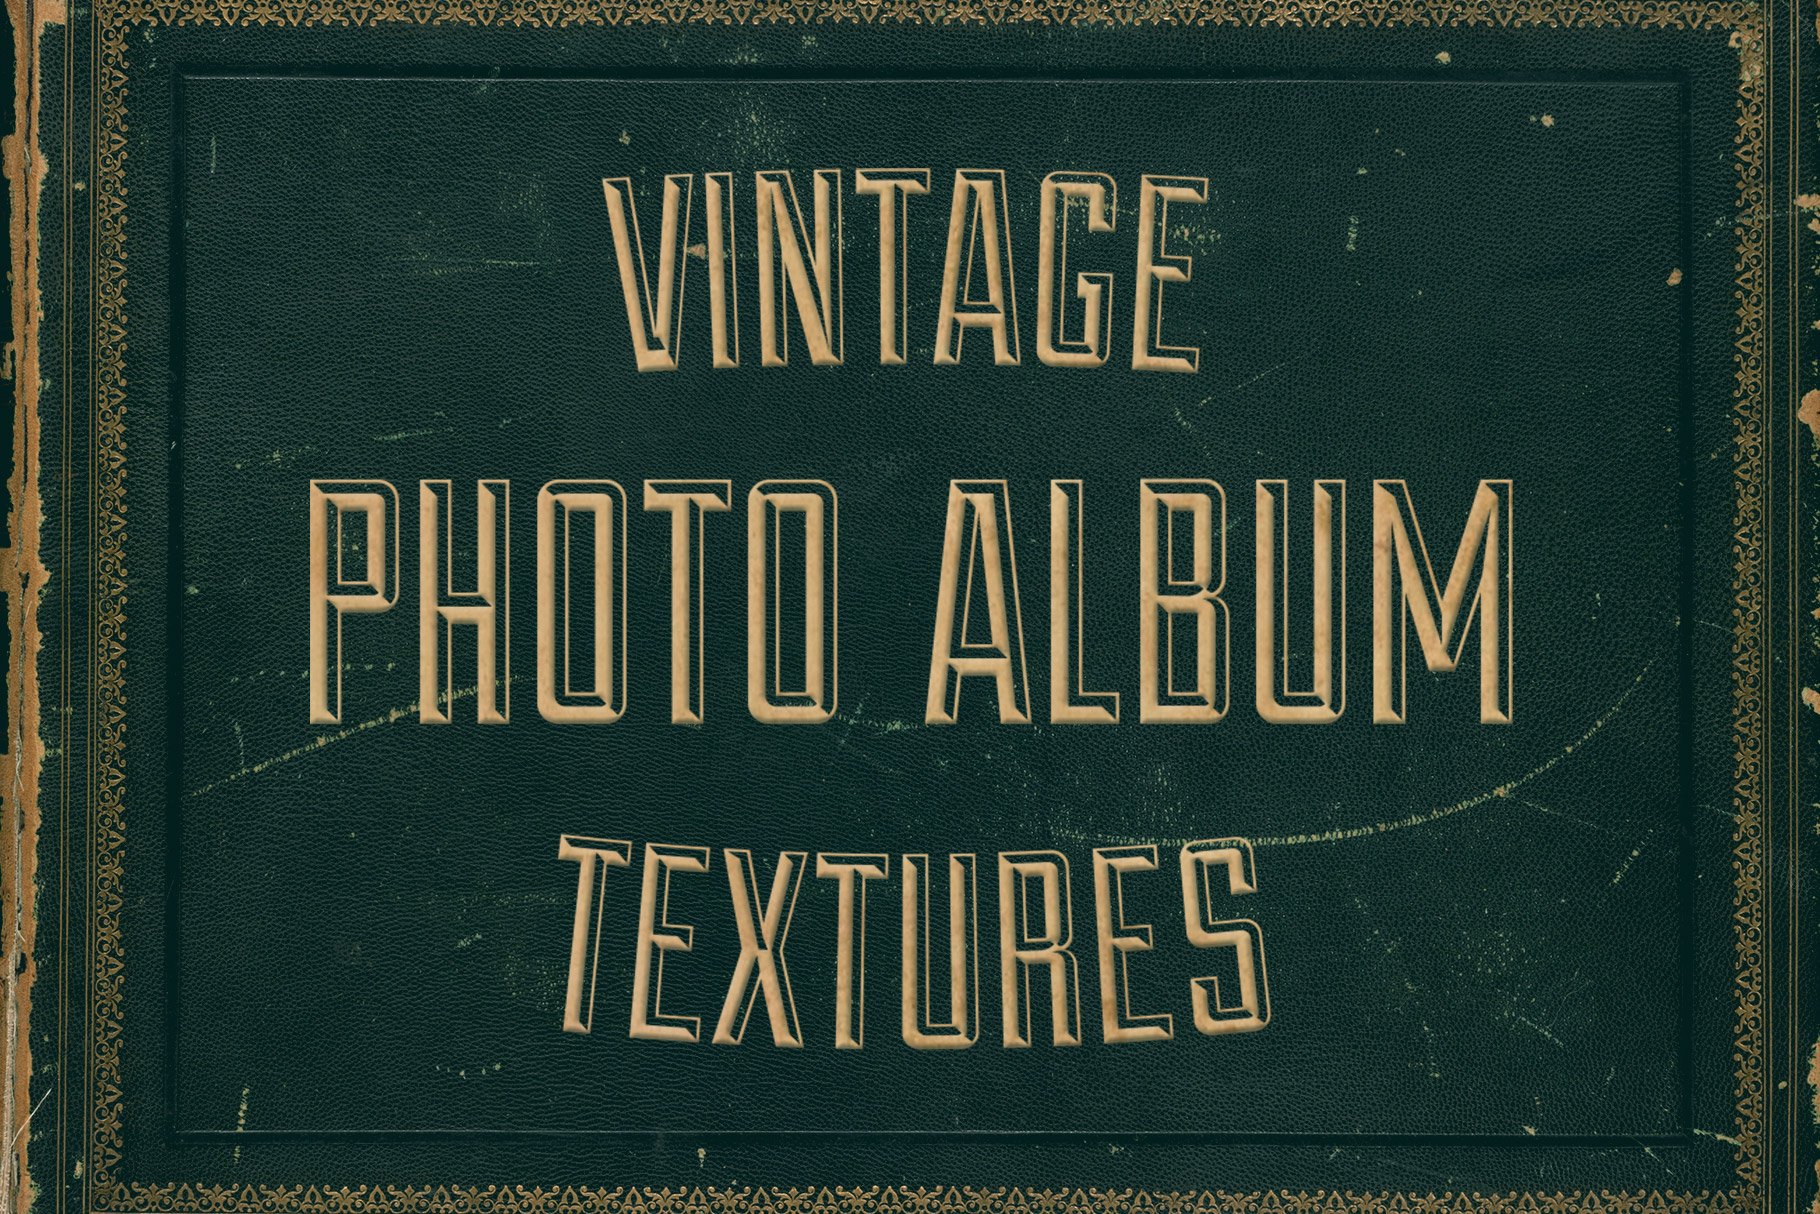 Vintage / Antique / Old Fashioned Photograph Album Templates Clip Art Set